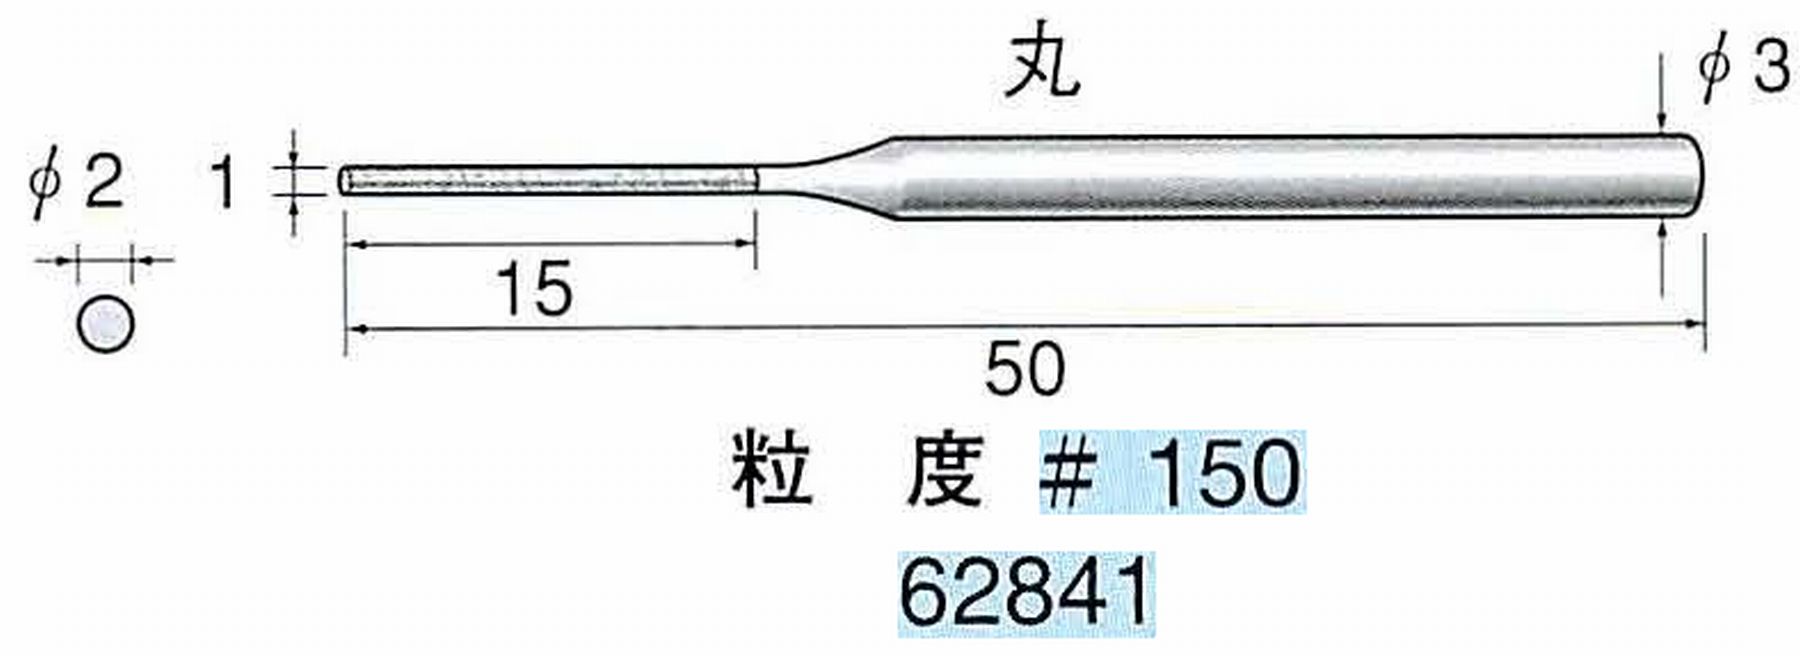 ナカニシ/NAKANISHI 電着ダイヤモンドヤスリショートタイプ 丸 62841